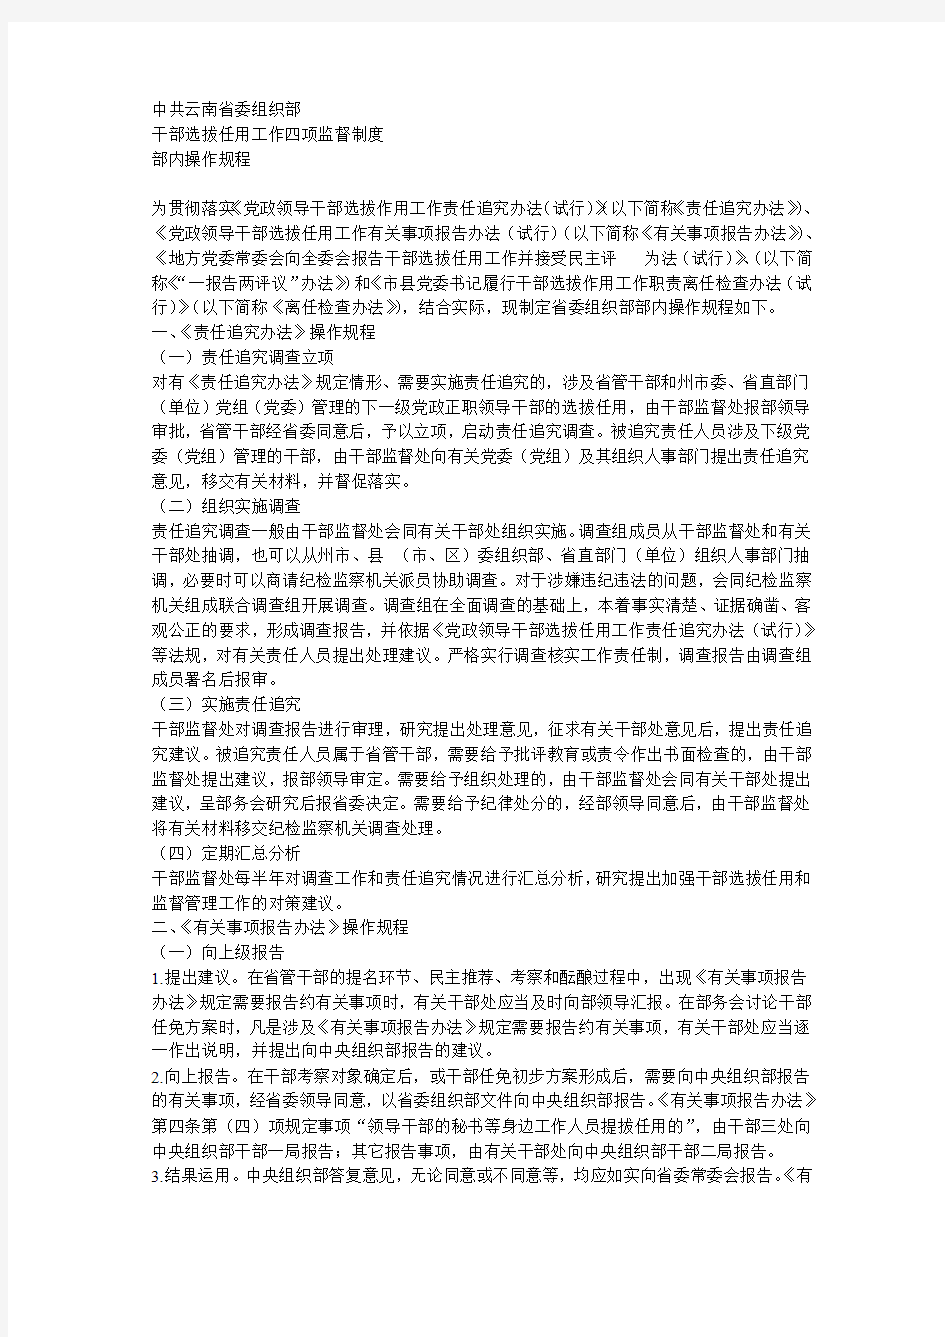 中共云南省委组织部干部选拔作用四项监督制度操作规程